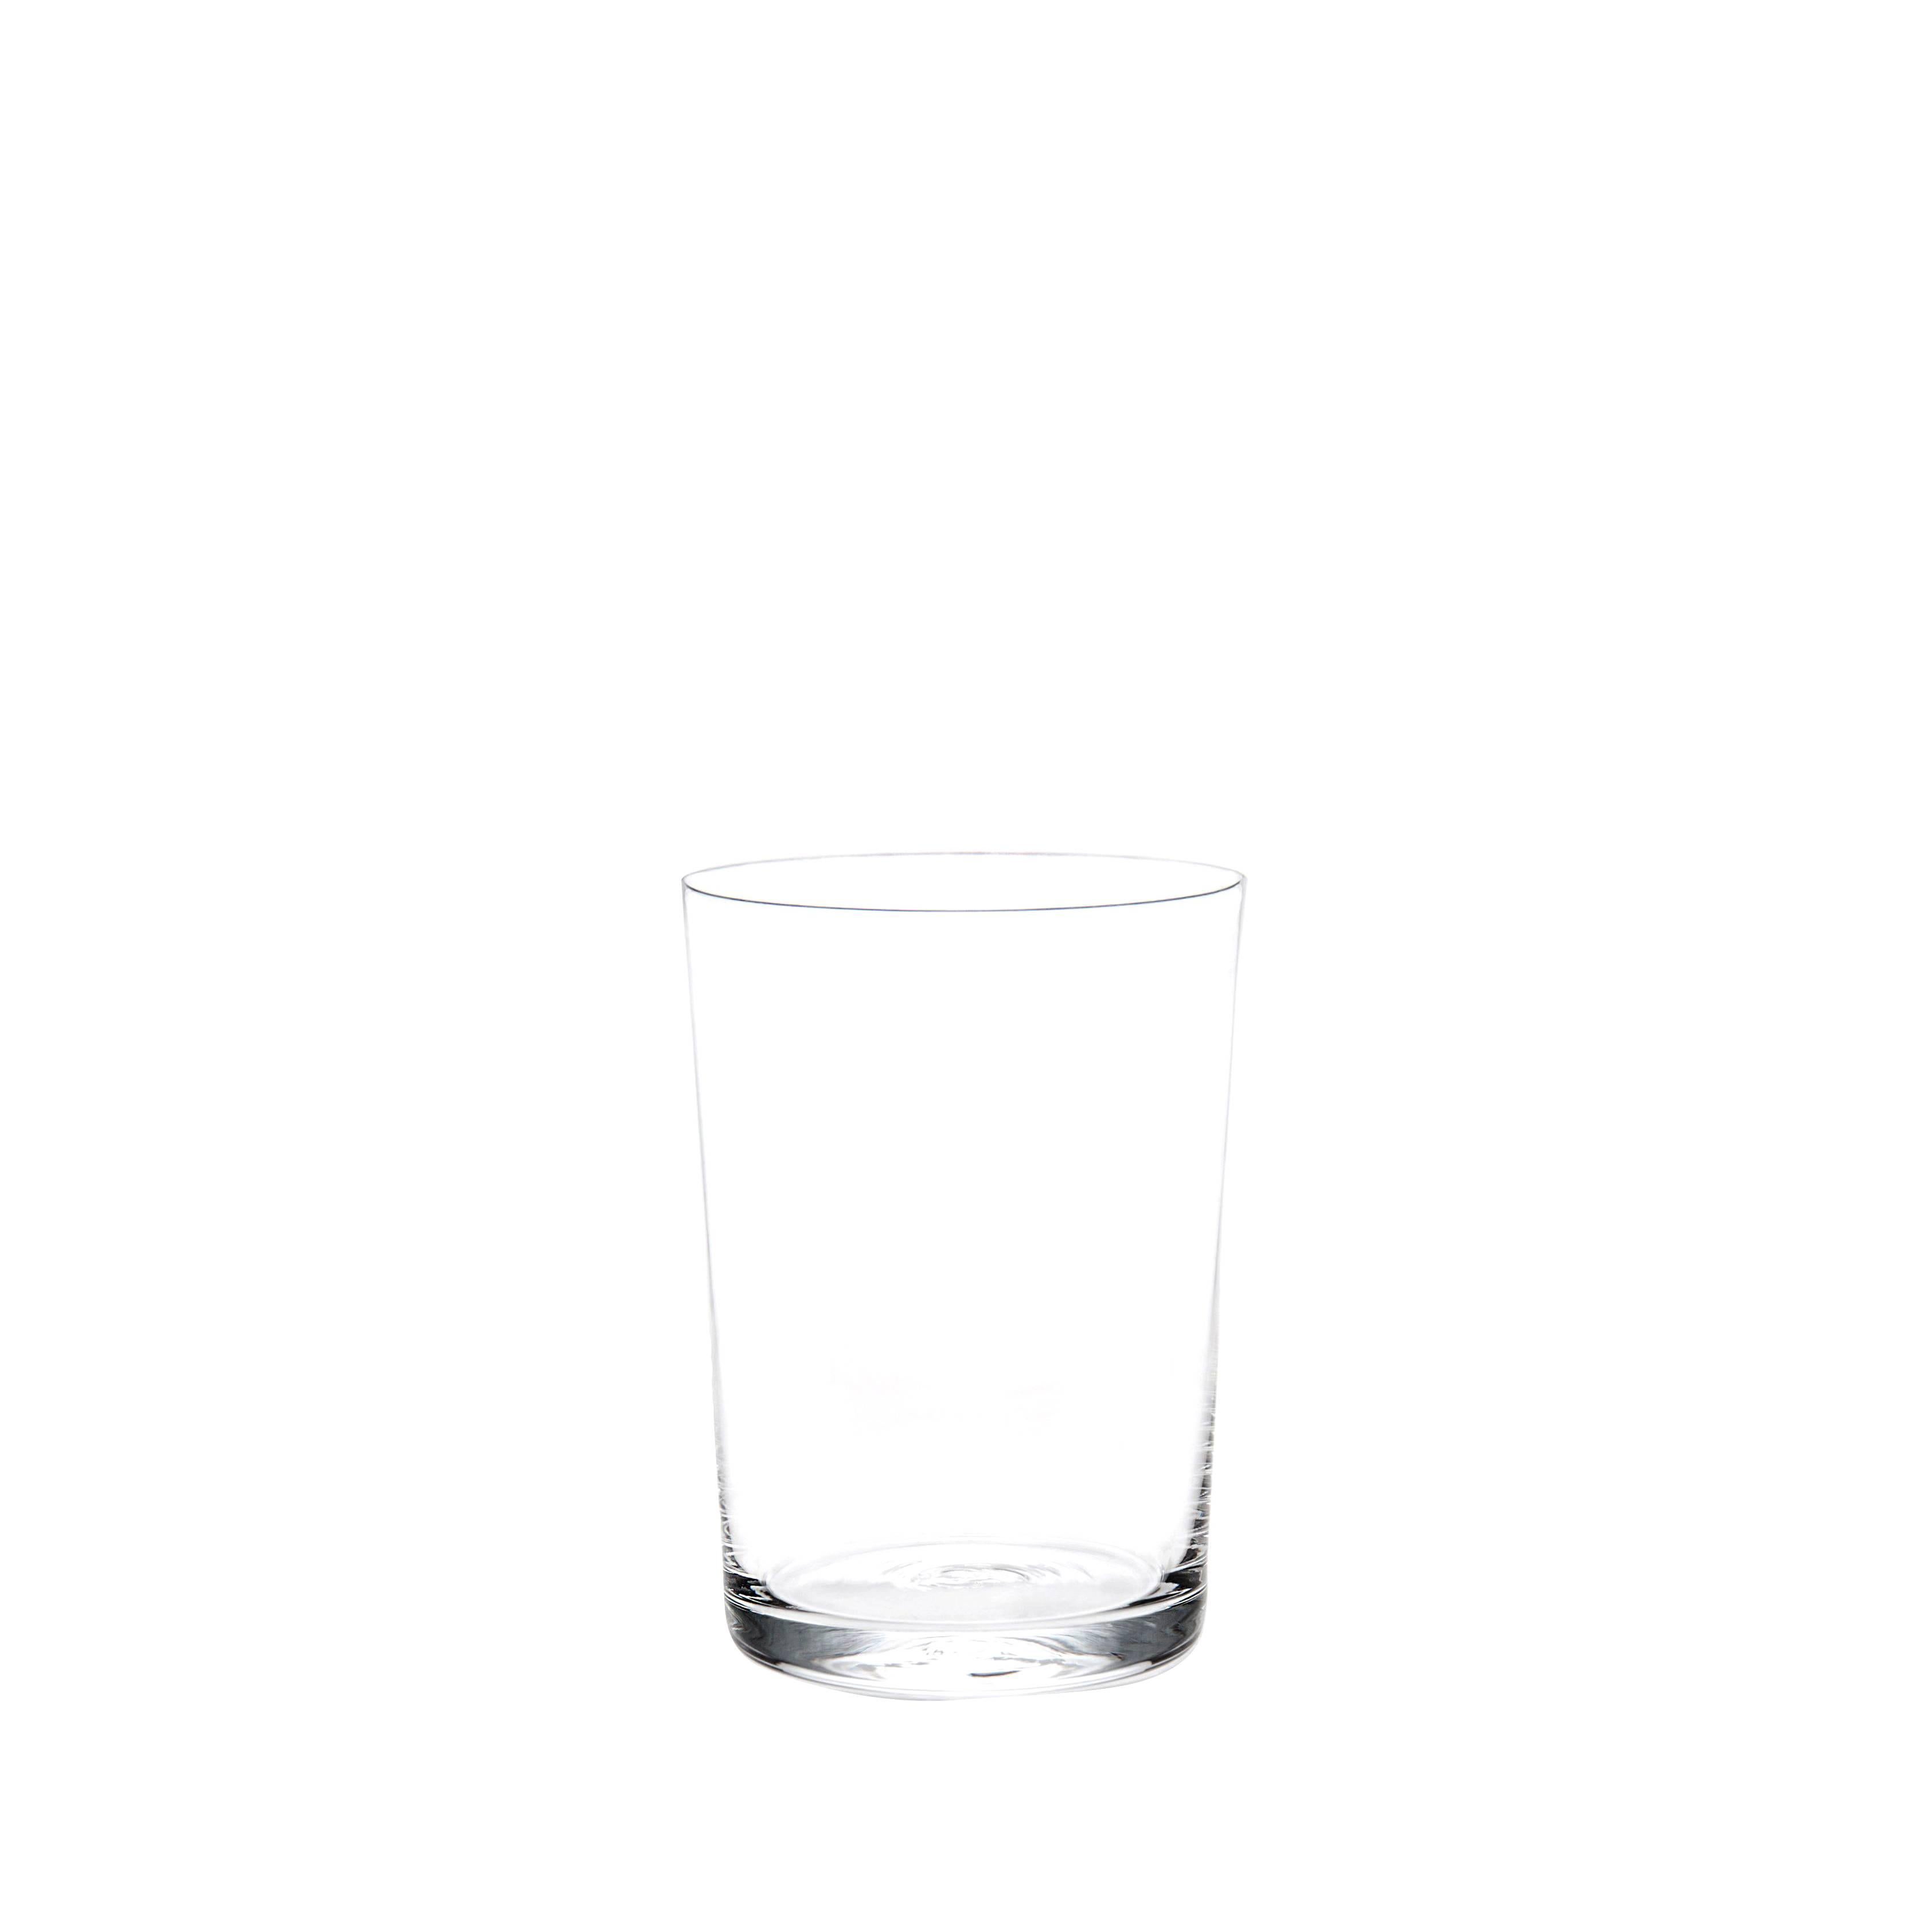 Set of 12 Deborah Ehrlich Simple Crystal Water Glasses, Hand Blown in Sweden